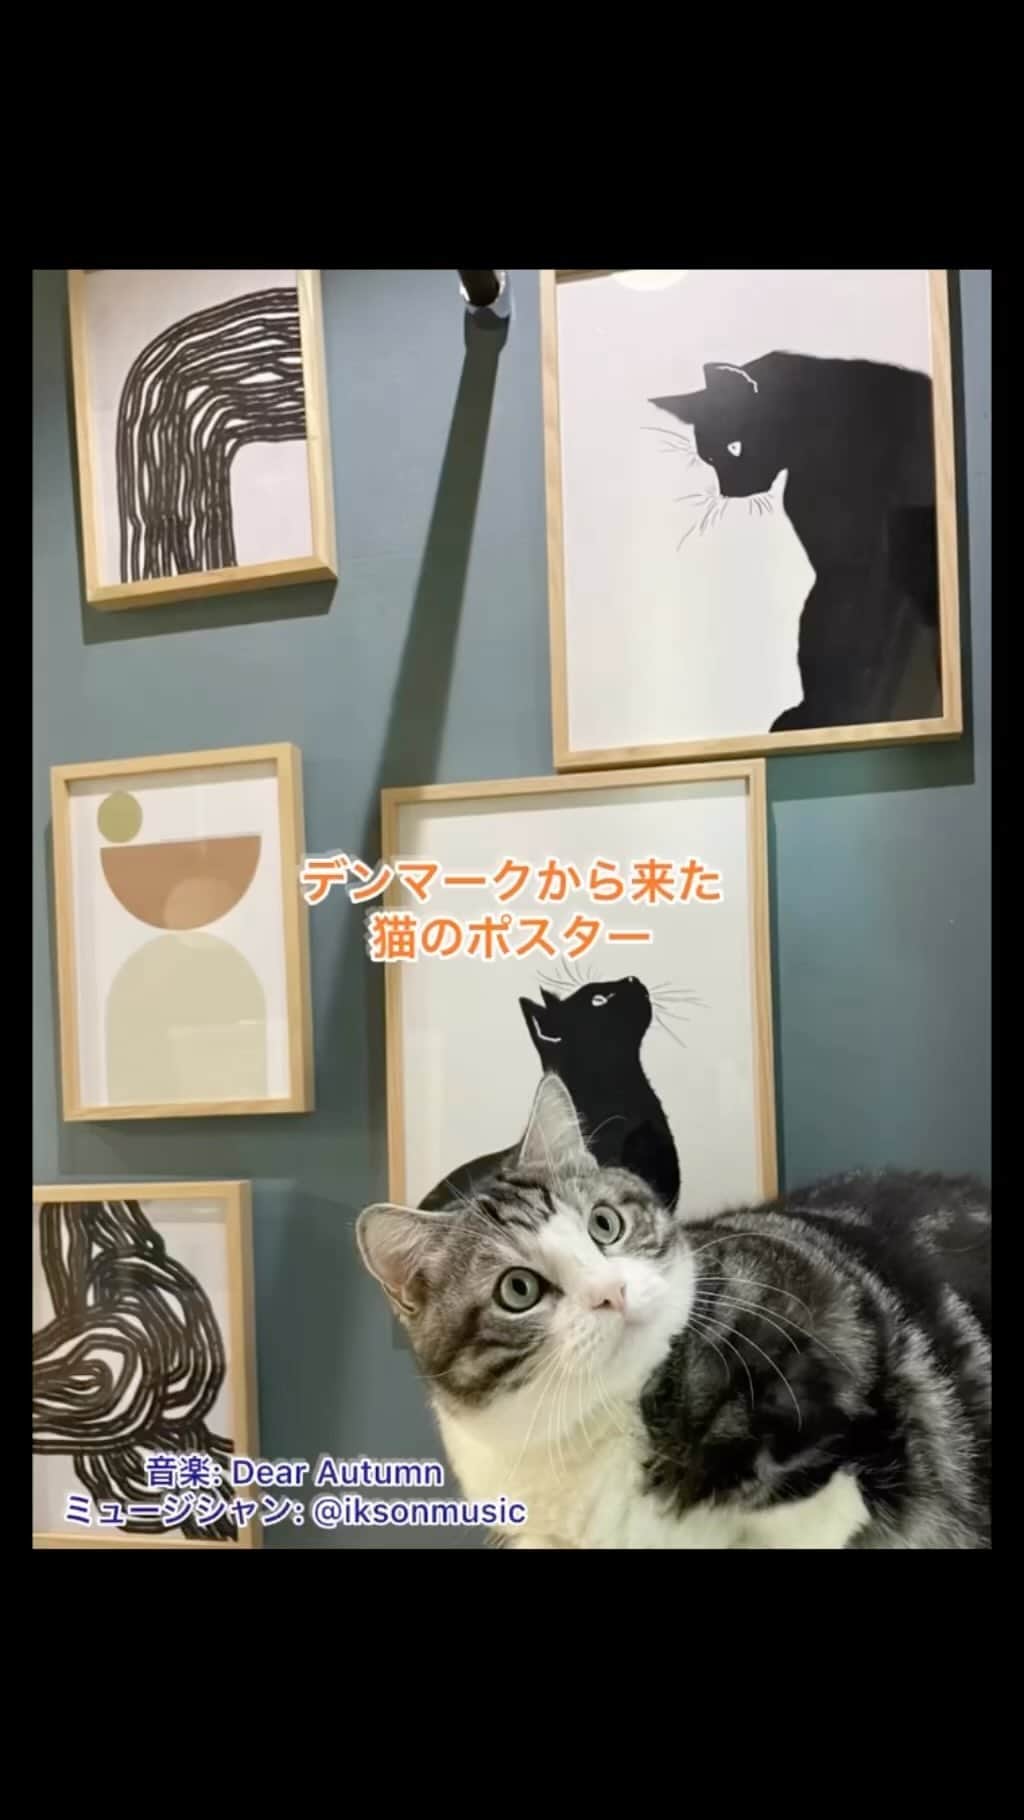 kamunaのインスタグラム：「この猫のポスターが中心のギャラリーウォールはデンマーク🇩🇰のサスティナブルで素敵なポスターを制作されている　@projectnord.jp さまが飾り方も提案して提供してくださったものです。 どうでしょう？素敵ですよね？？😊 @projectnord.jp さまでは限られた資源やエネルギーを大切にされていて注文を受けてから1枚1枚印刷します。1枚につき1本の木🌲を植えています。なので在庫はありません。  そして 日本でもデンマーク🇩🇰でも愛されている動物"ねこ"を救うプロジェクトを始動🎉 保護猫🐈🐈🐈を救うため寄付活動をされています。 猫ポスターのご購入者さまは500円の寄付ができるオプションを選ぶことができます。お客様が寄付を選択された場合そこへ500円を追加し合計で1,000円の寄付になる仕組みです。そして集まった寄付金の送り先は　@tsuna_mayo2704  さんが中心となって実施されている「保護猫ラーメンカフェ」活動宛てと決まりました。 @tsuna_mayo2704 さんは、ただいまreadyfor にて保護猫に里親を見つけ譲渡する機会を設けるラーメン屋一体型保護猫カフェを作る支援を求めていらっしゃいます。 @projectnord.jp さまはこの活動を新しい試みと感じ、是非この活動を応援したいと思われたそうです。😽😽😽😽😽  素敵なポスターを飾って保護猫活動を応援しませんか？  PR  #ポスター#ギャラリーウォール#保護猫#デンマーク#北欧#サスティナブル#ねこ#保護猫カフェ」